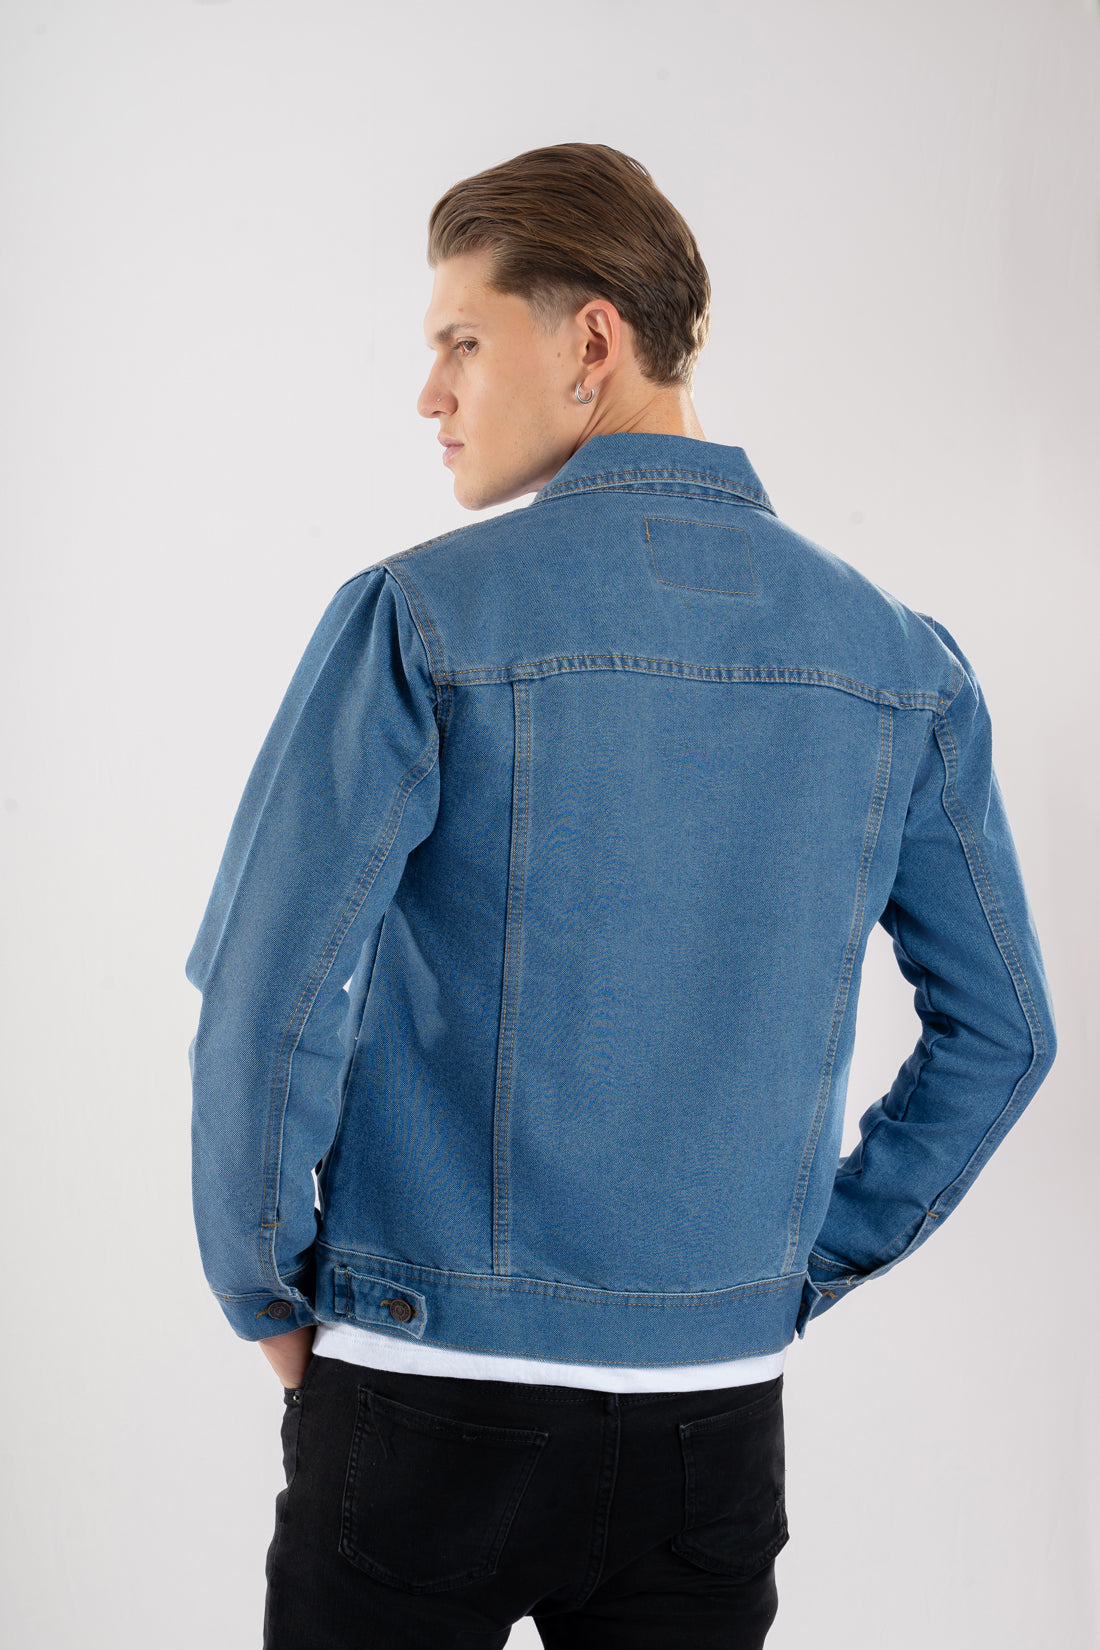 Chaqueta de jean estilo clasico color azul medio vista de espalda